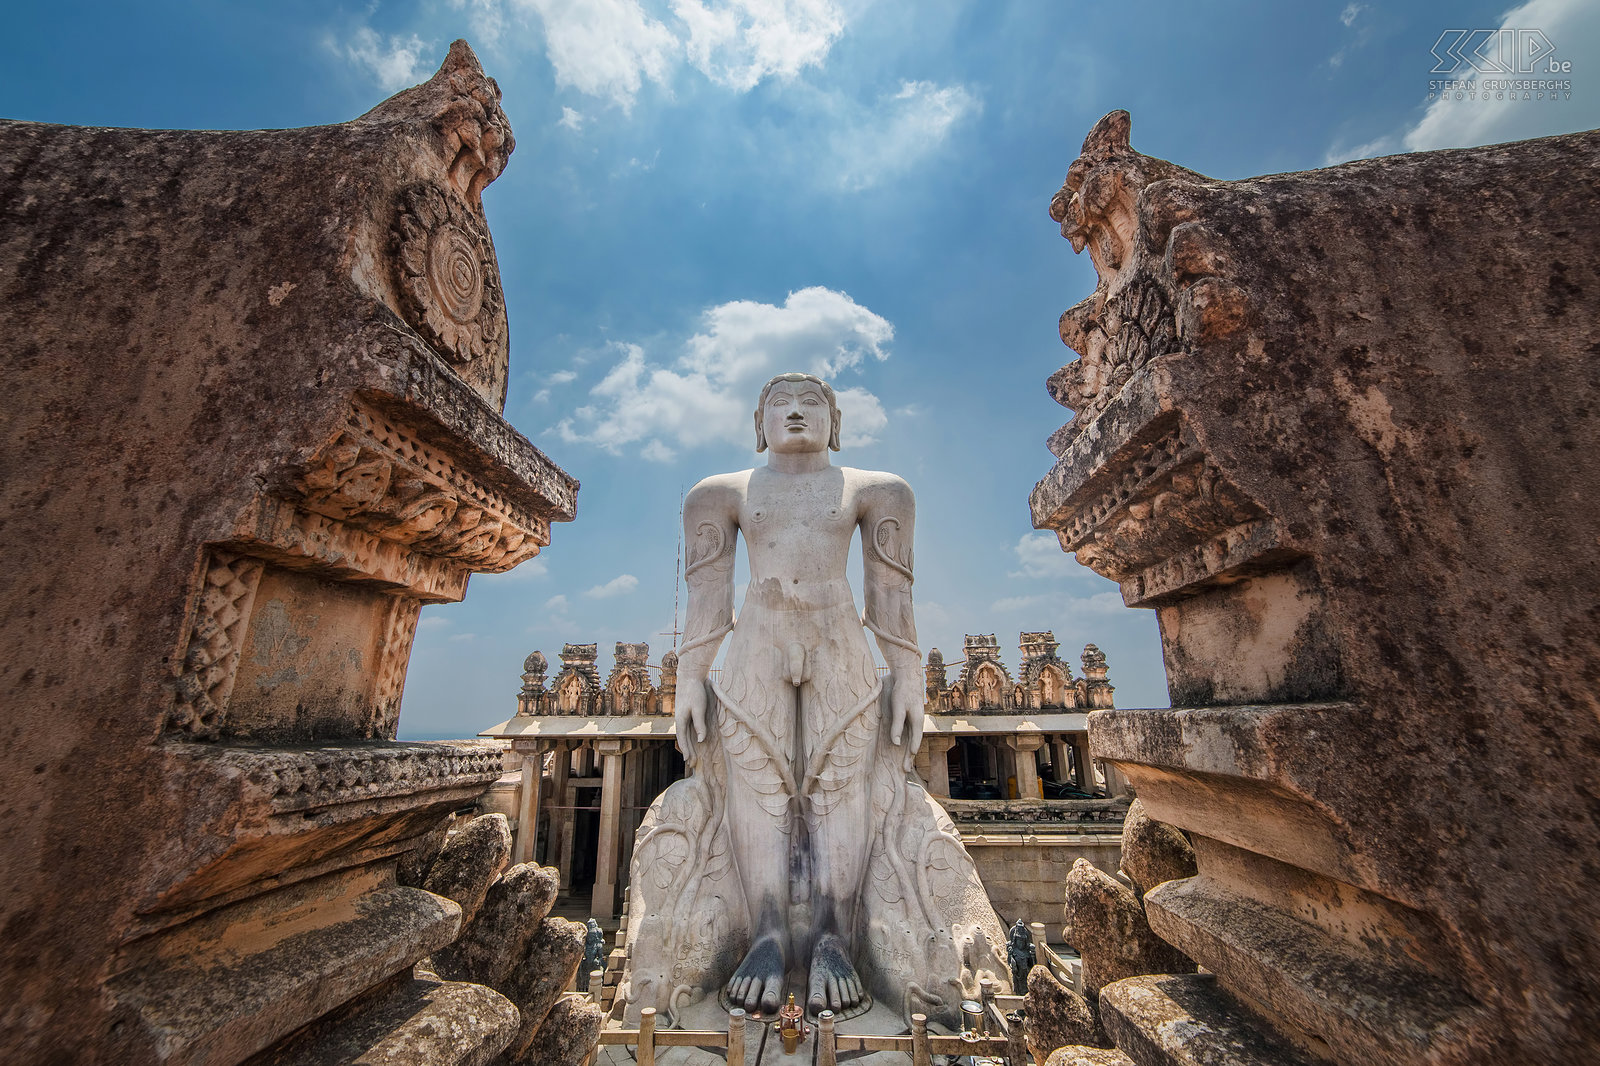 Shravanabelagola - Bahubali Op de top van de Vindyagiri heuvel in Shravanabelagola staat er een kolosaal wit standbeeld van Gommateshvara Bahubali. Het is 17 meter hoog en het wordt beschouwd als 's werelds grootste monolithische stenen beeld. Het is gebeeldhouwd in 981 na Christus. Bahubali was de zoon van Rishabhanatha, de eerste Tirthankara (religieuze leraar) van het Jaïnisme. Hij zou een jaar lang in staande houding roerloos hebben gemediteerd. Elke twaalf jaar is er een spectaculaire ceremonie en duizenden devote Jains offeren dan rijst, suikerriet, sandelhout, saffraan, bloemen, ...  Stefan Cruysberghs